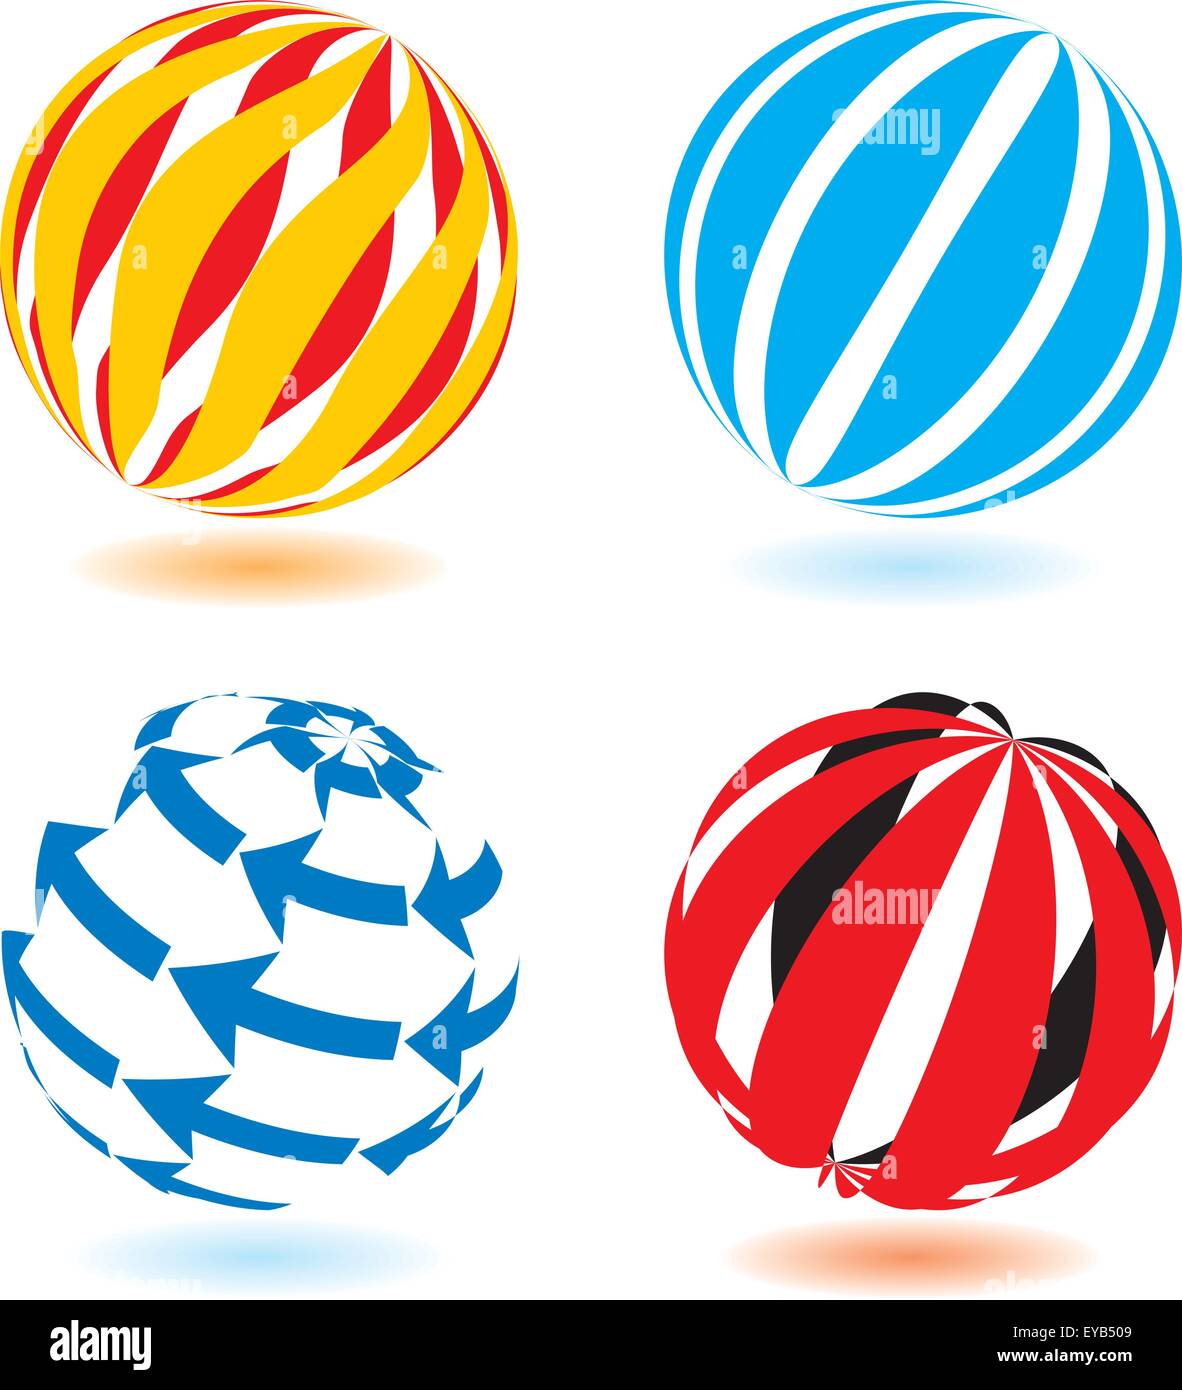 Abstract globe logos Stock Vector